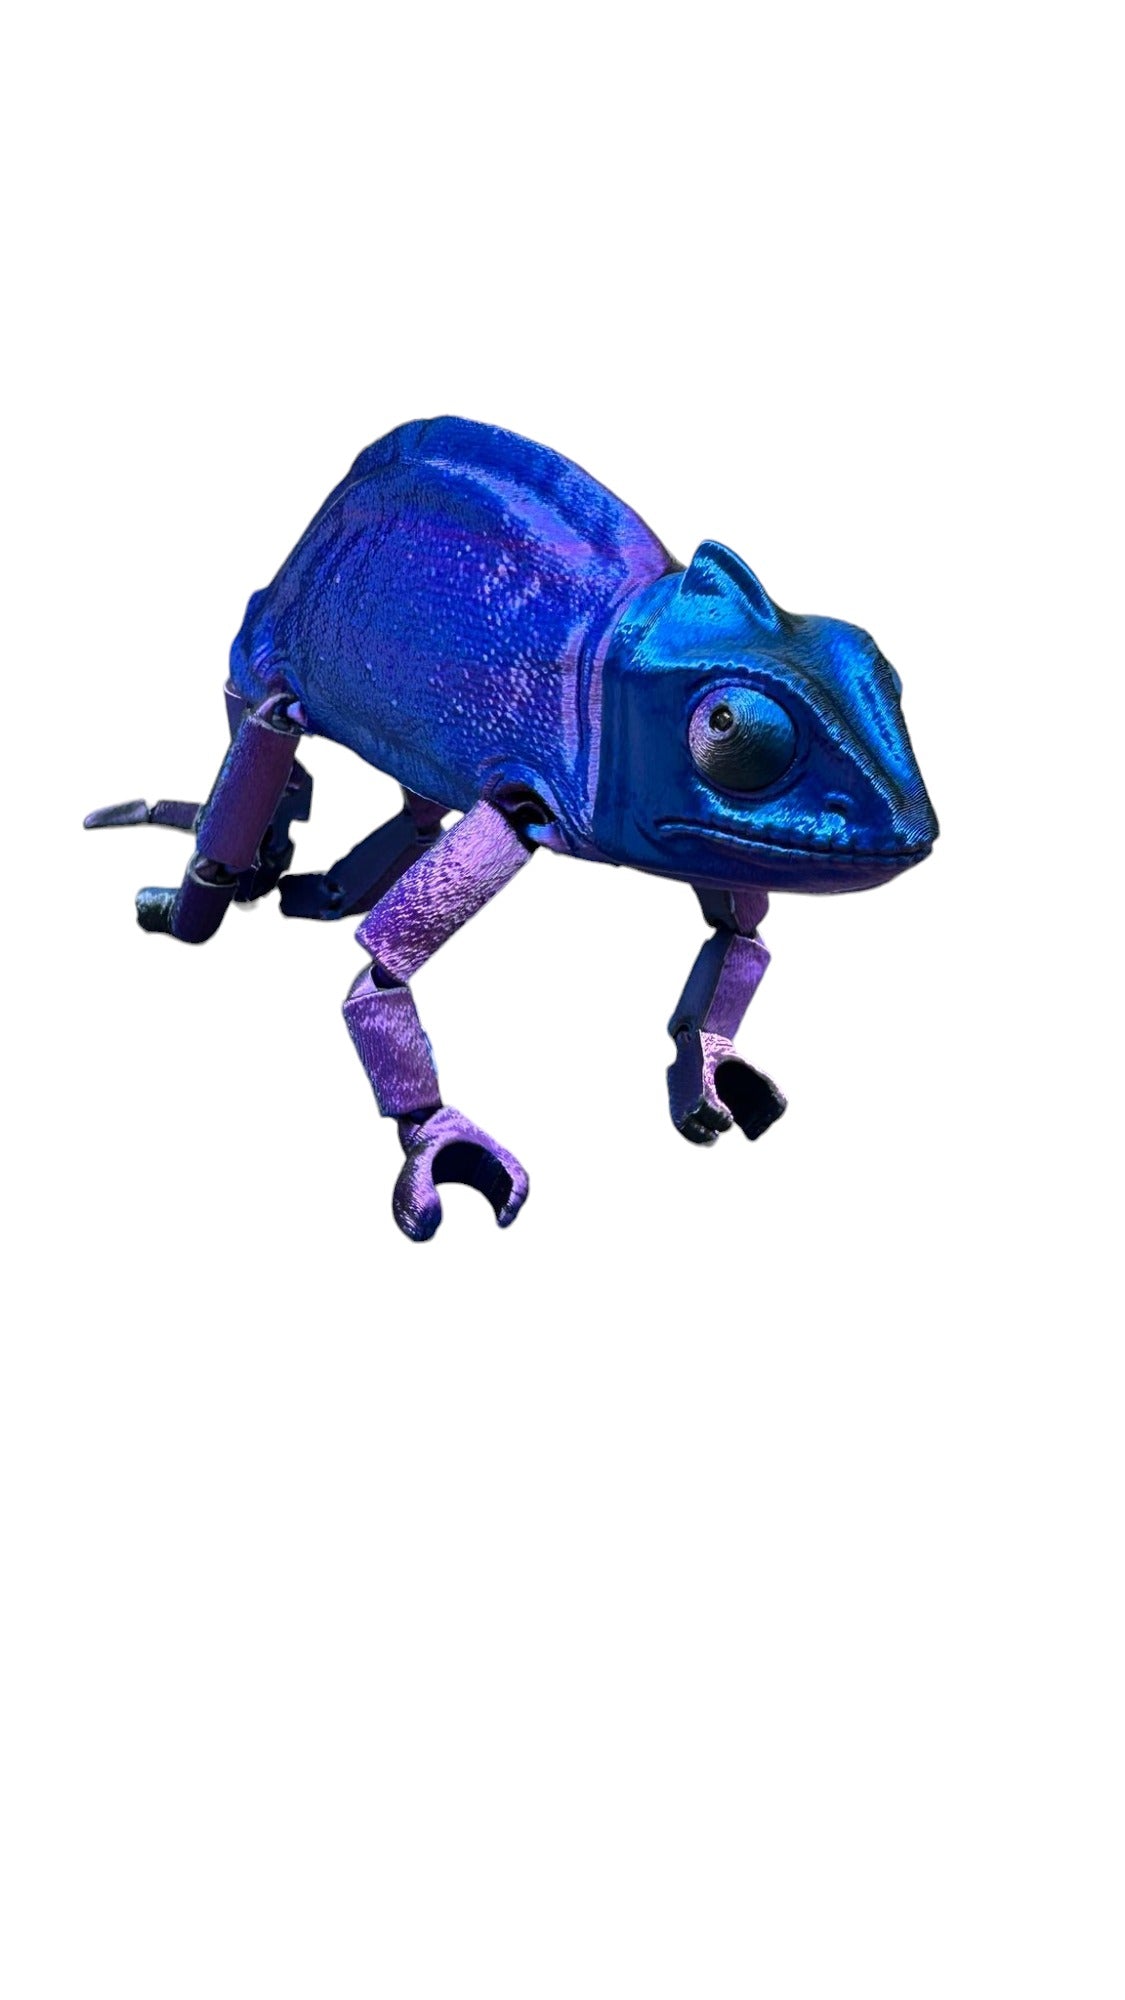 3D Printed Chameleon